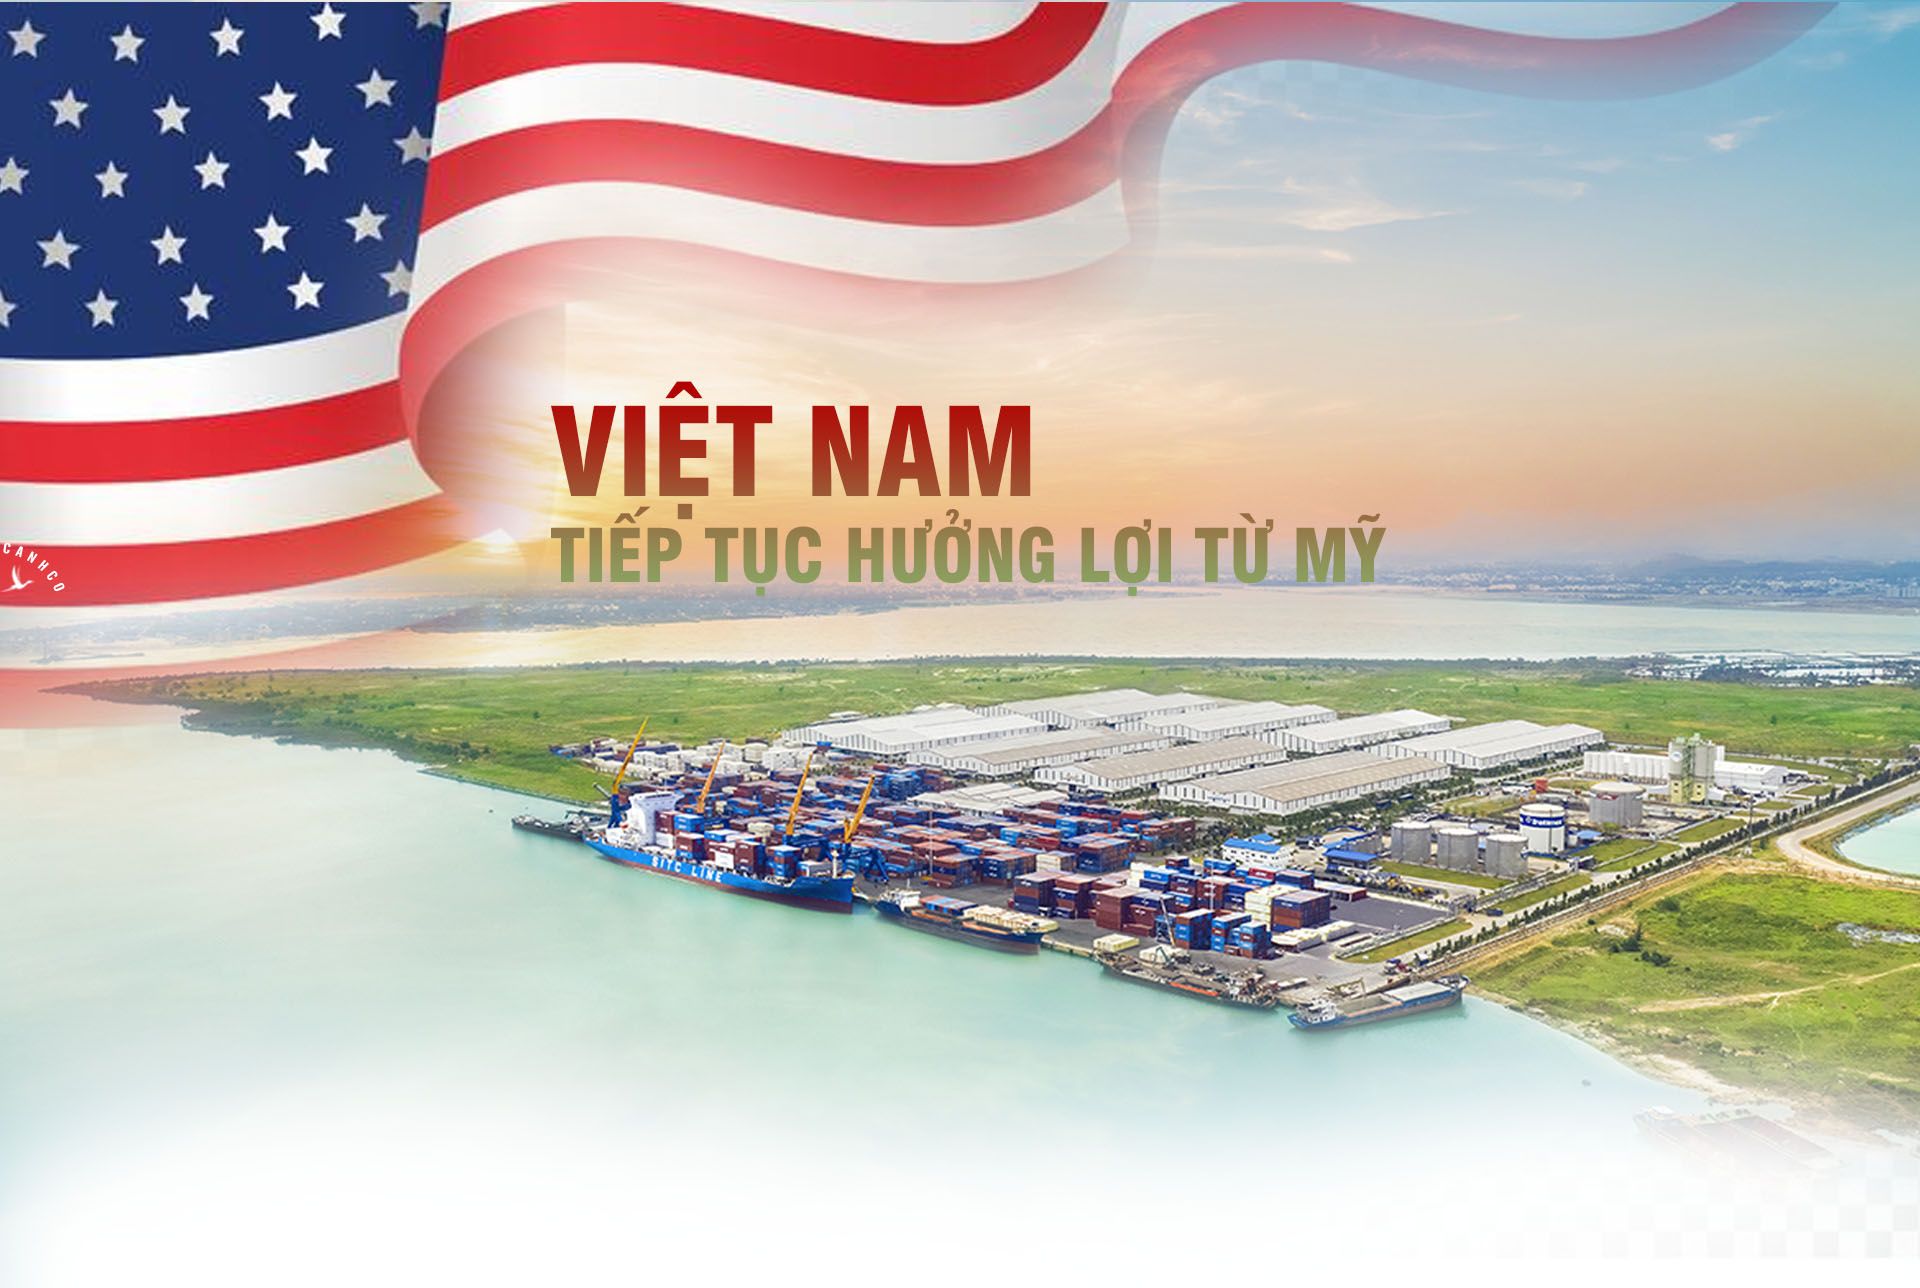 Việt Nam tiếp tục hưởng lợi từ Mỹ